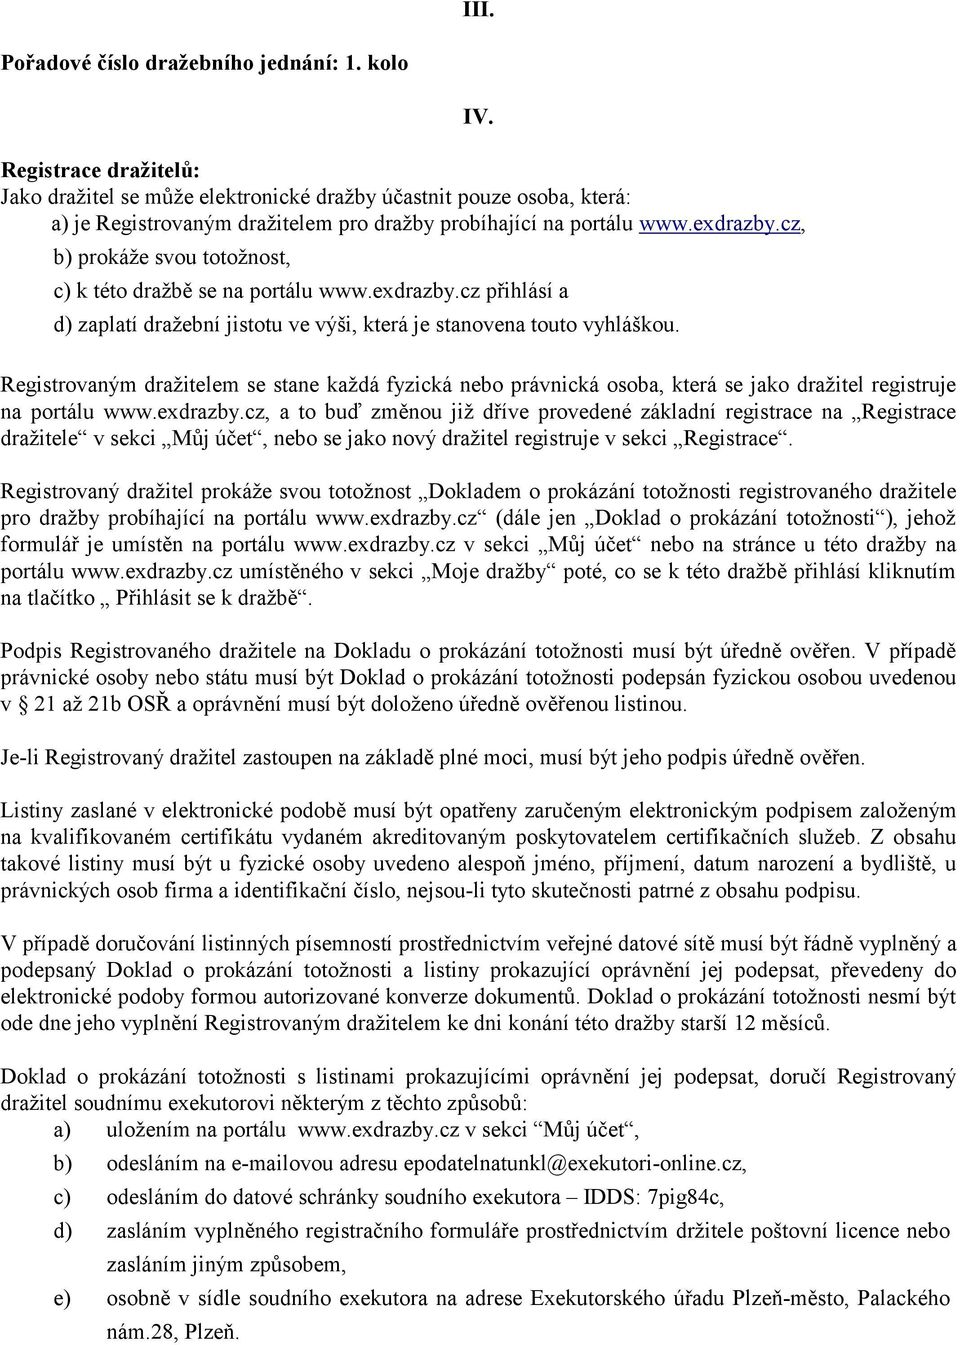 cz, b) prokáže svou totožnost, IV. c) k této dražbě se na portálu www.exdrazby.cz přihlásí a d) zaplatí dražební jistotu ve výši, která je stanovena touto vyhláškou.